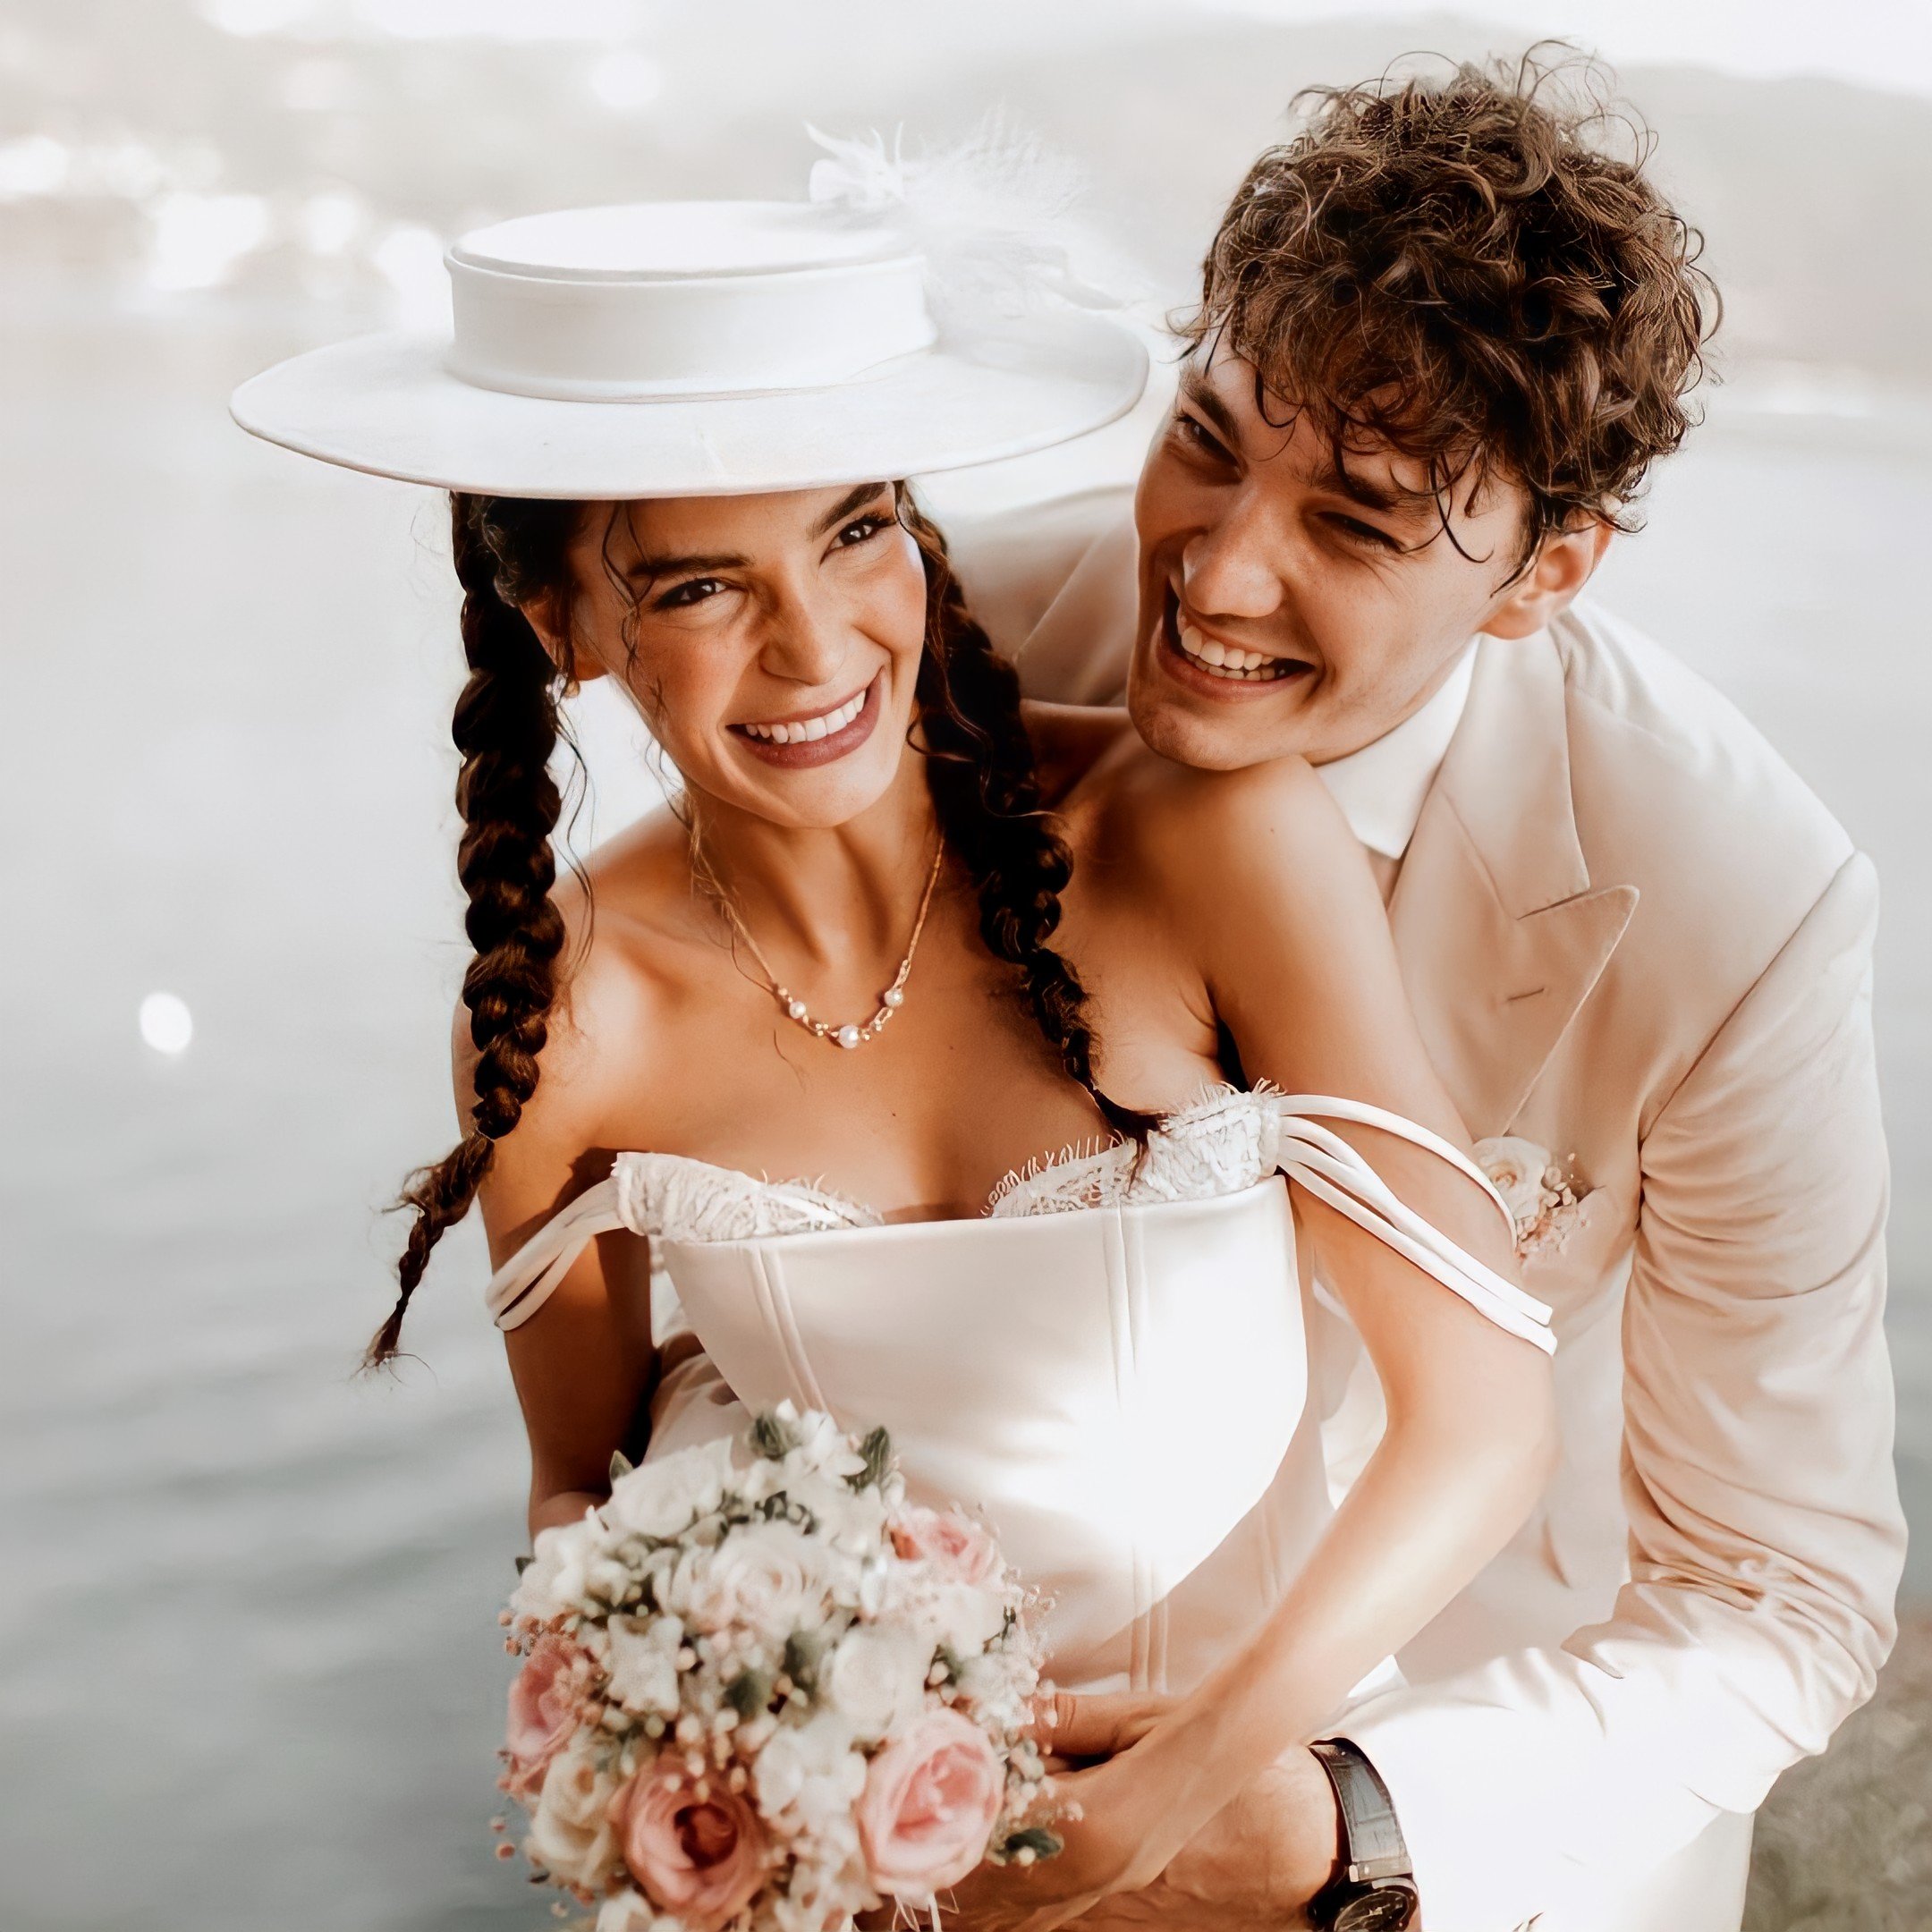 Ebru Şahin and Cedi Osman Wedding Photos